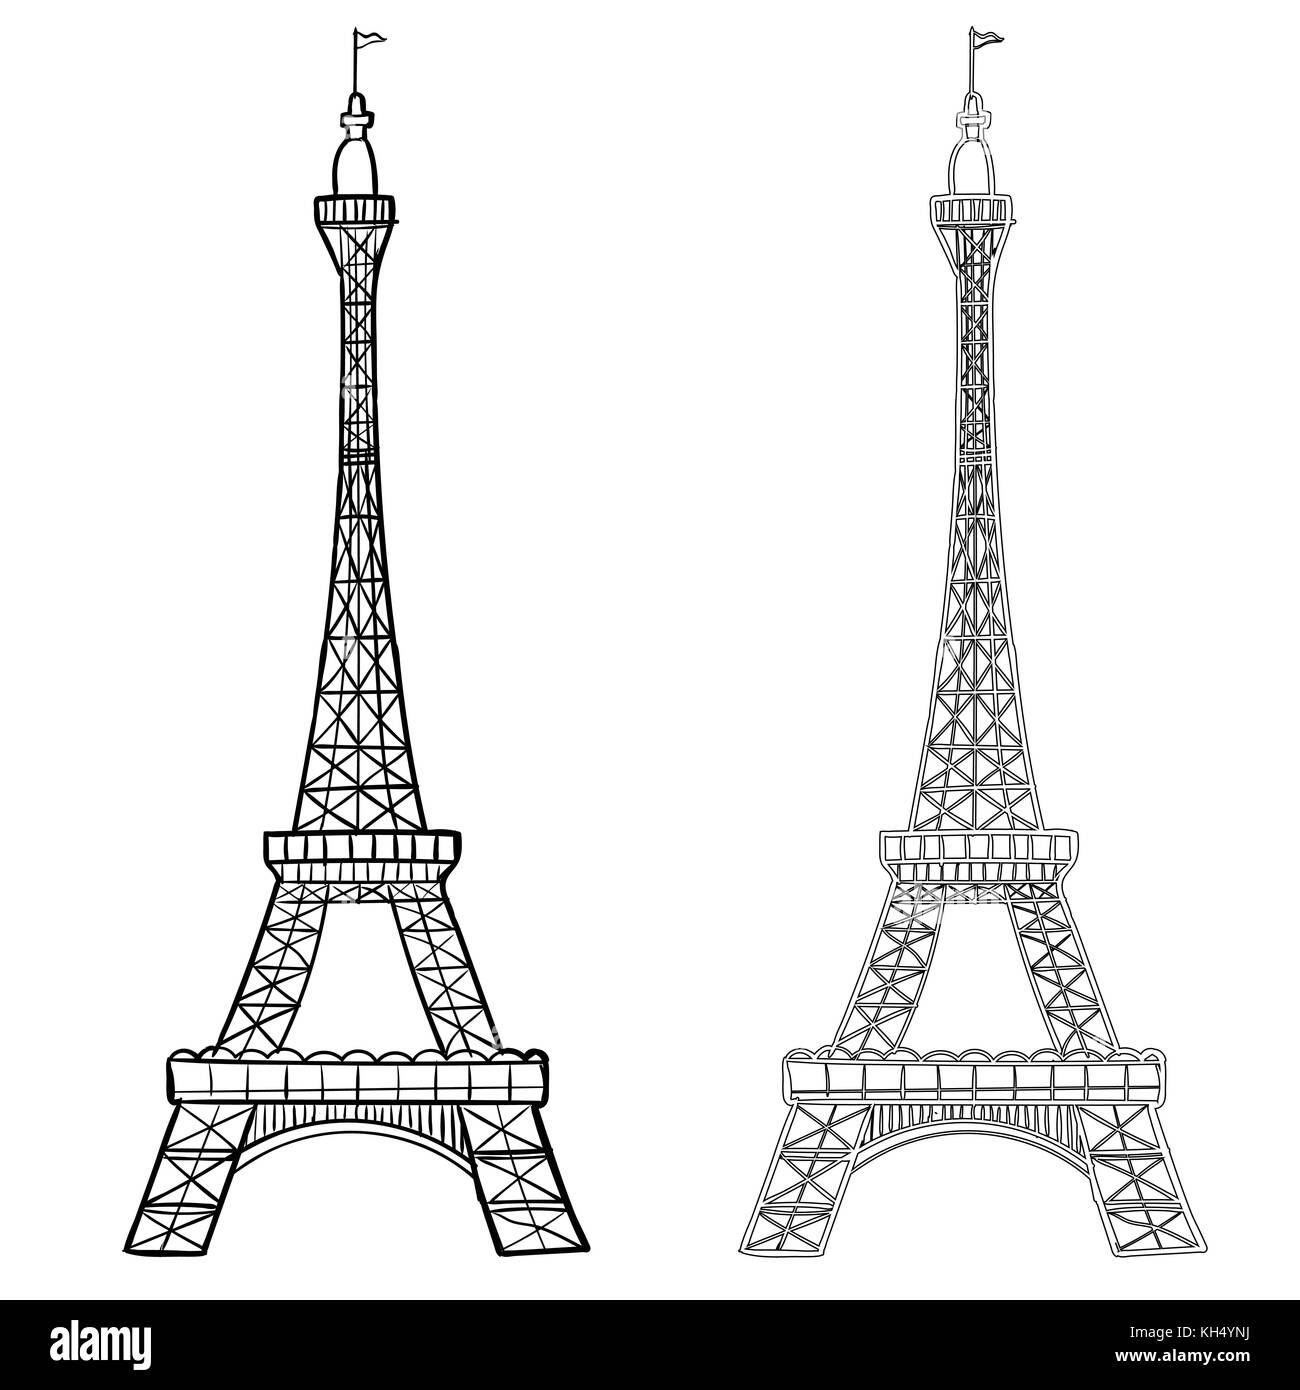 Illustrazione della torre eiffel con due stili di disegno a mano di eifel tower. Semplice schizzo in stile contorno nero isolato su sfondo bianco. vettore han Illustrazione Vettoriale